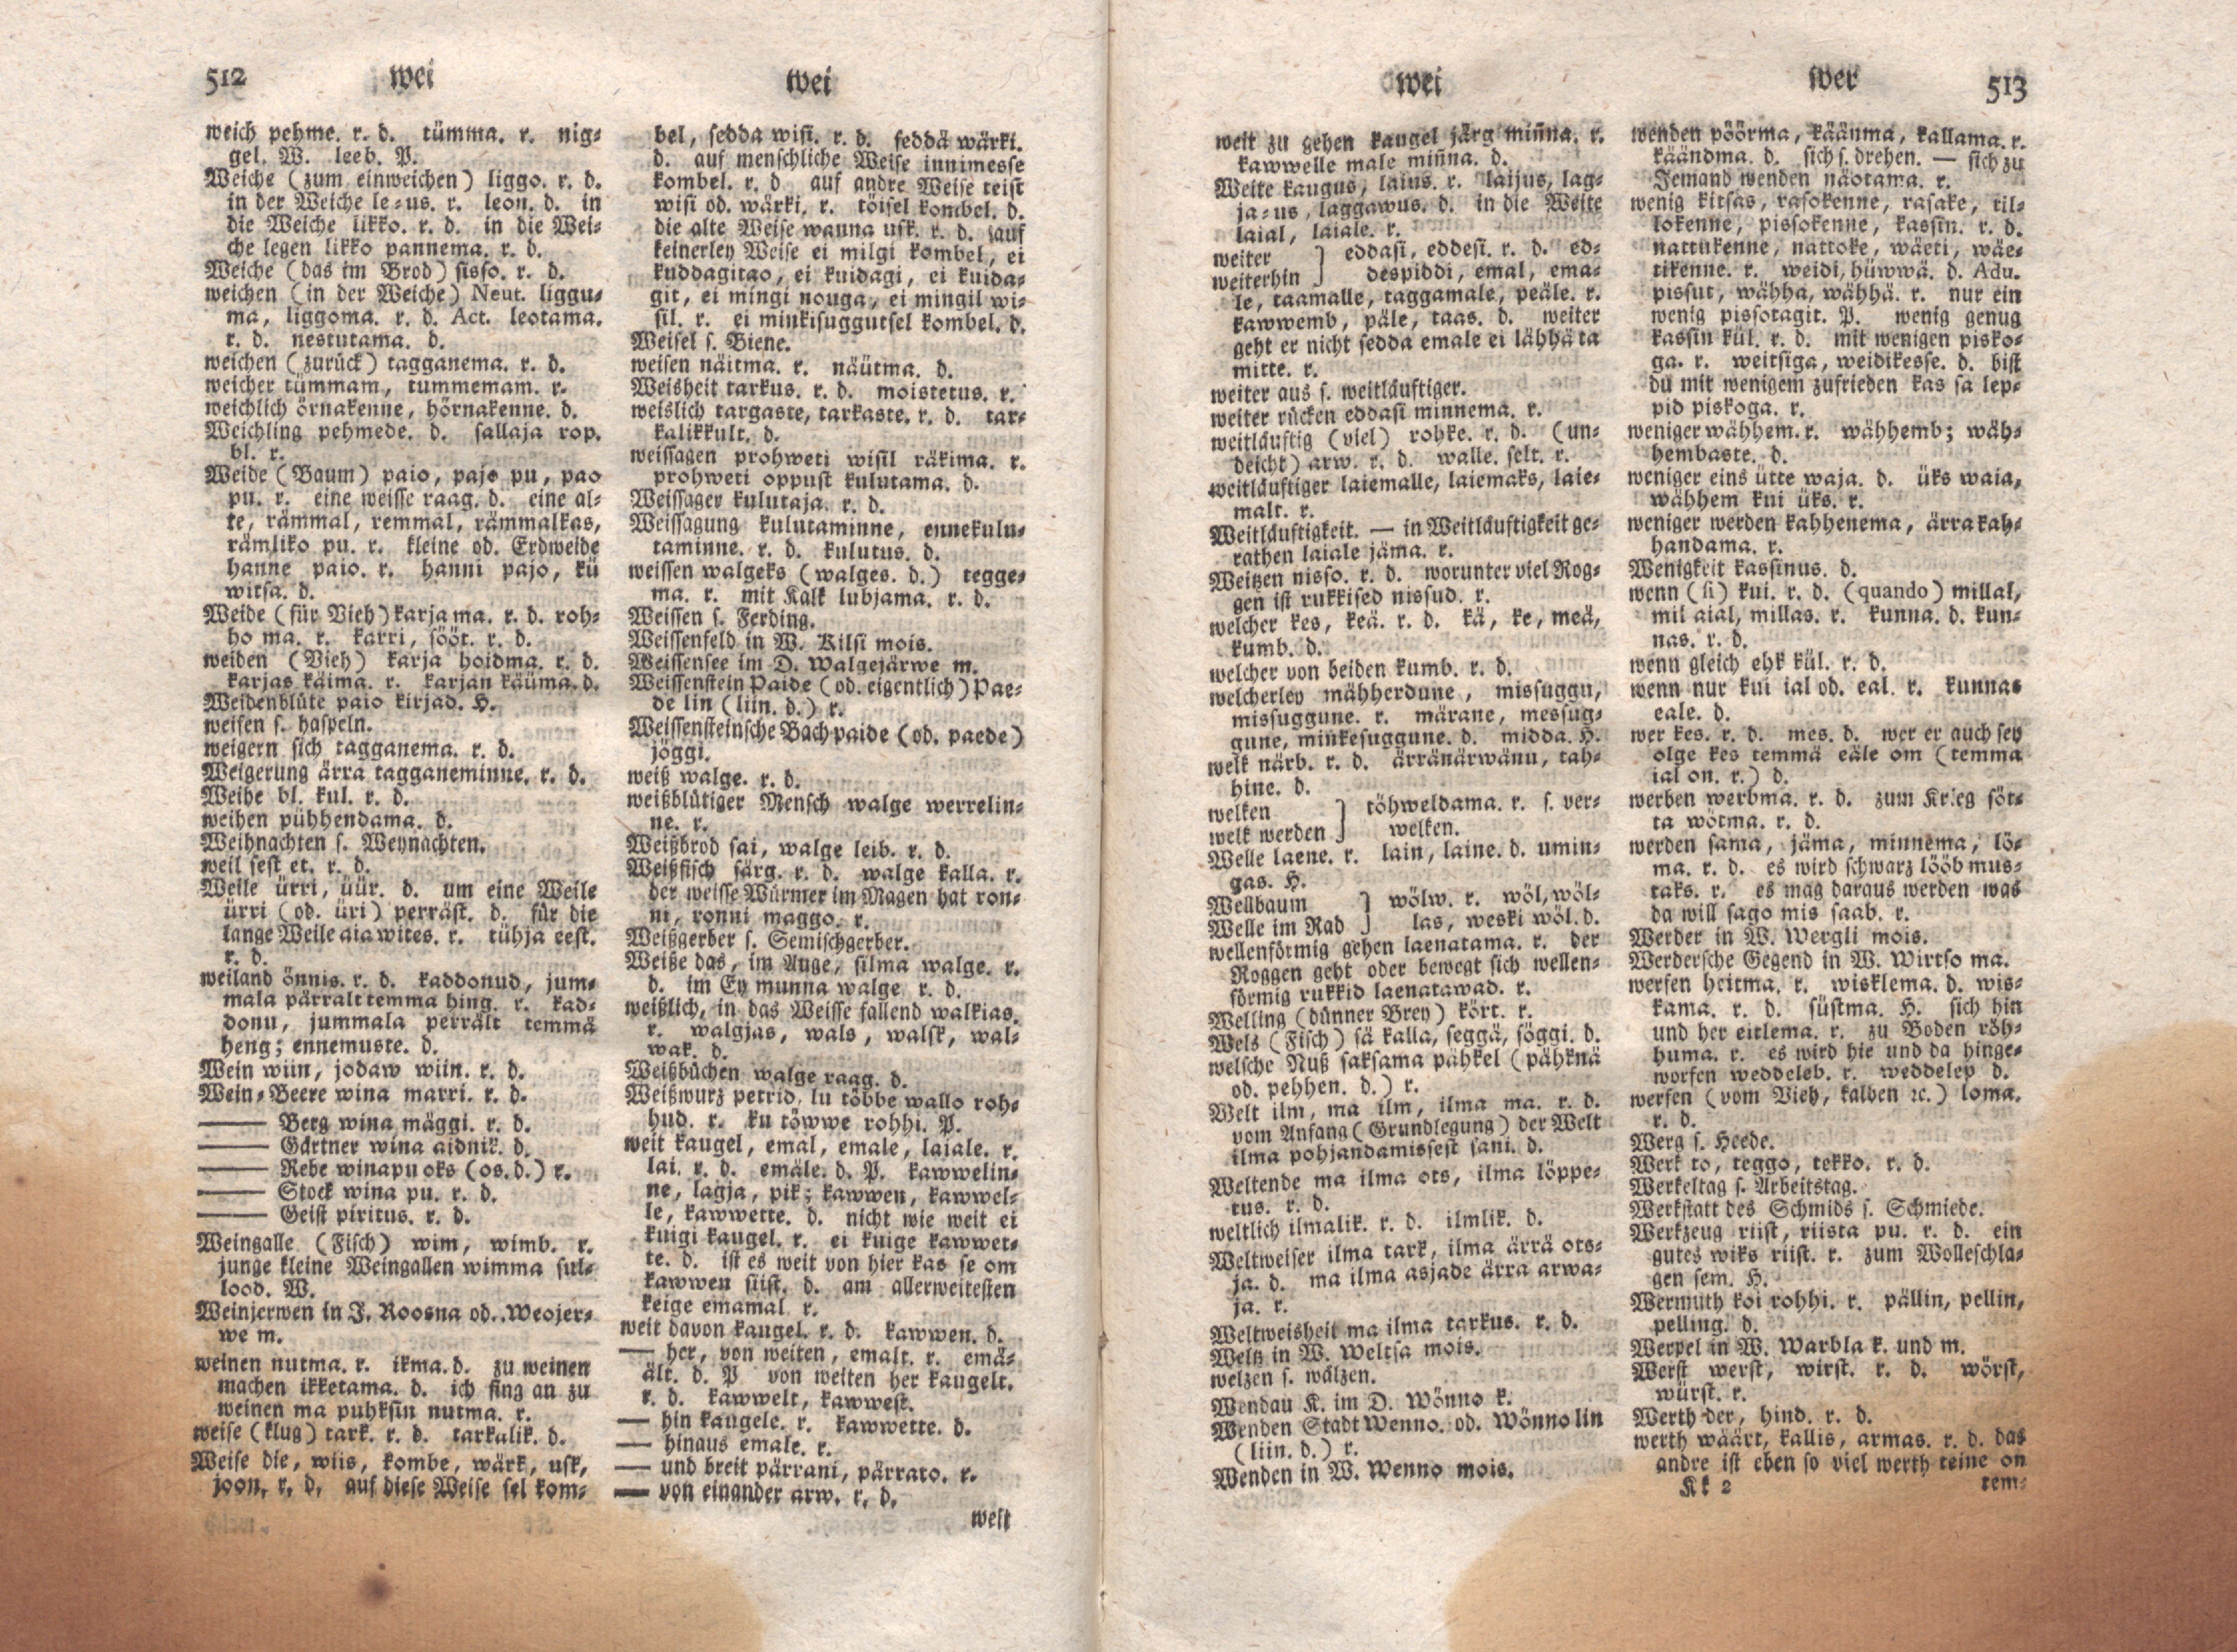 Ehstnische Sprachlehre für beide Hauptdialekte (1780) | 267. (512-513) Main body of text